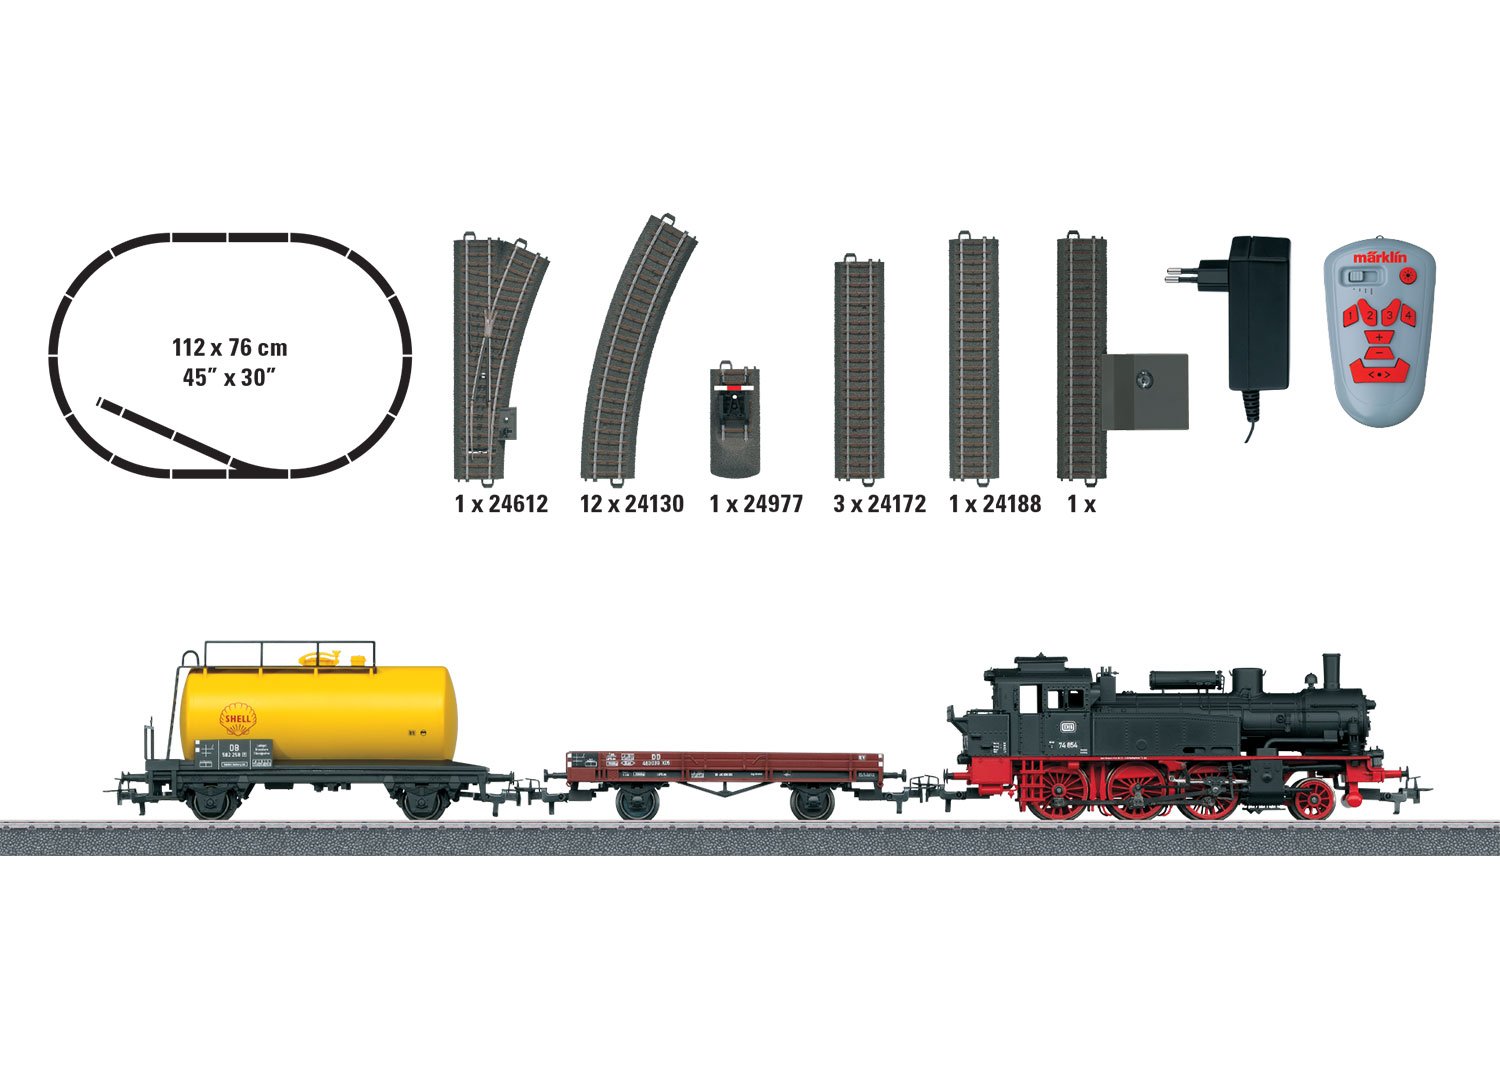 Marklin 29166 - Starter Set Freight Train BR 74